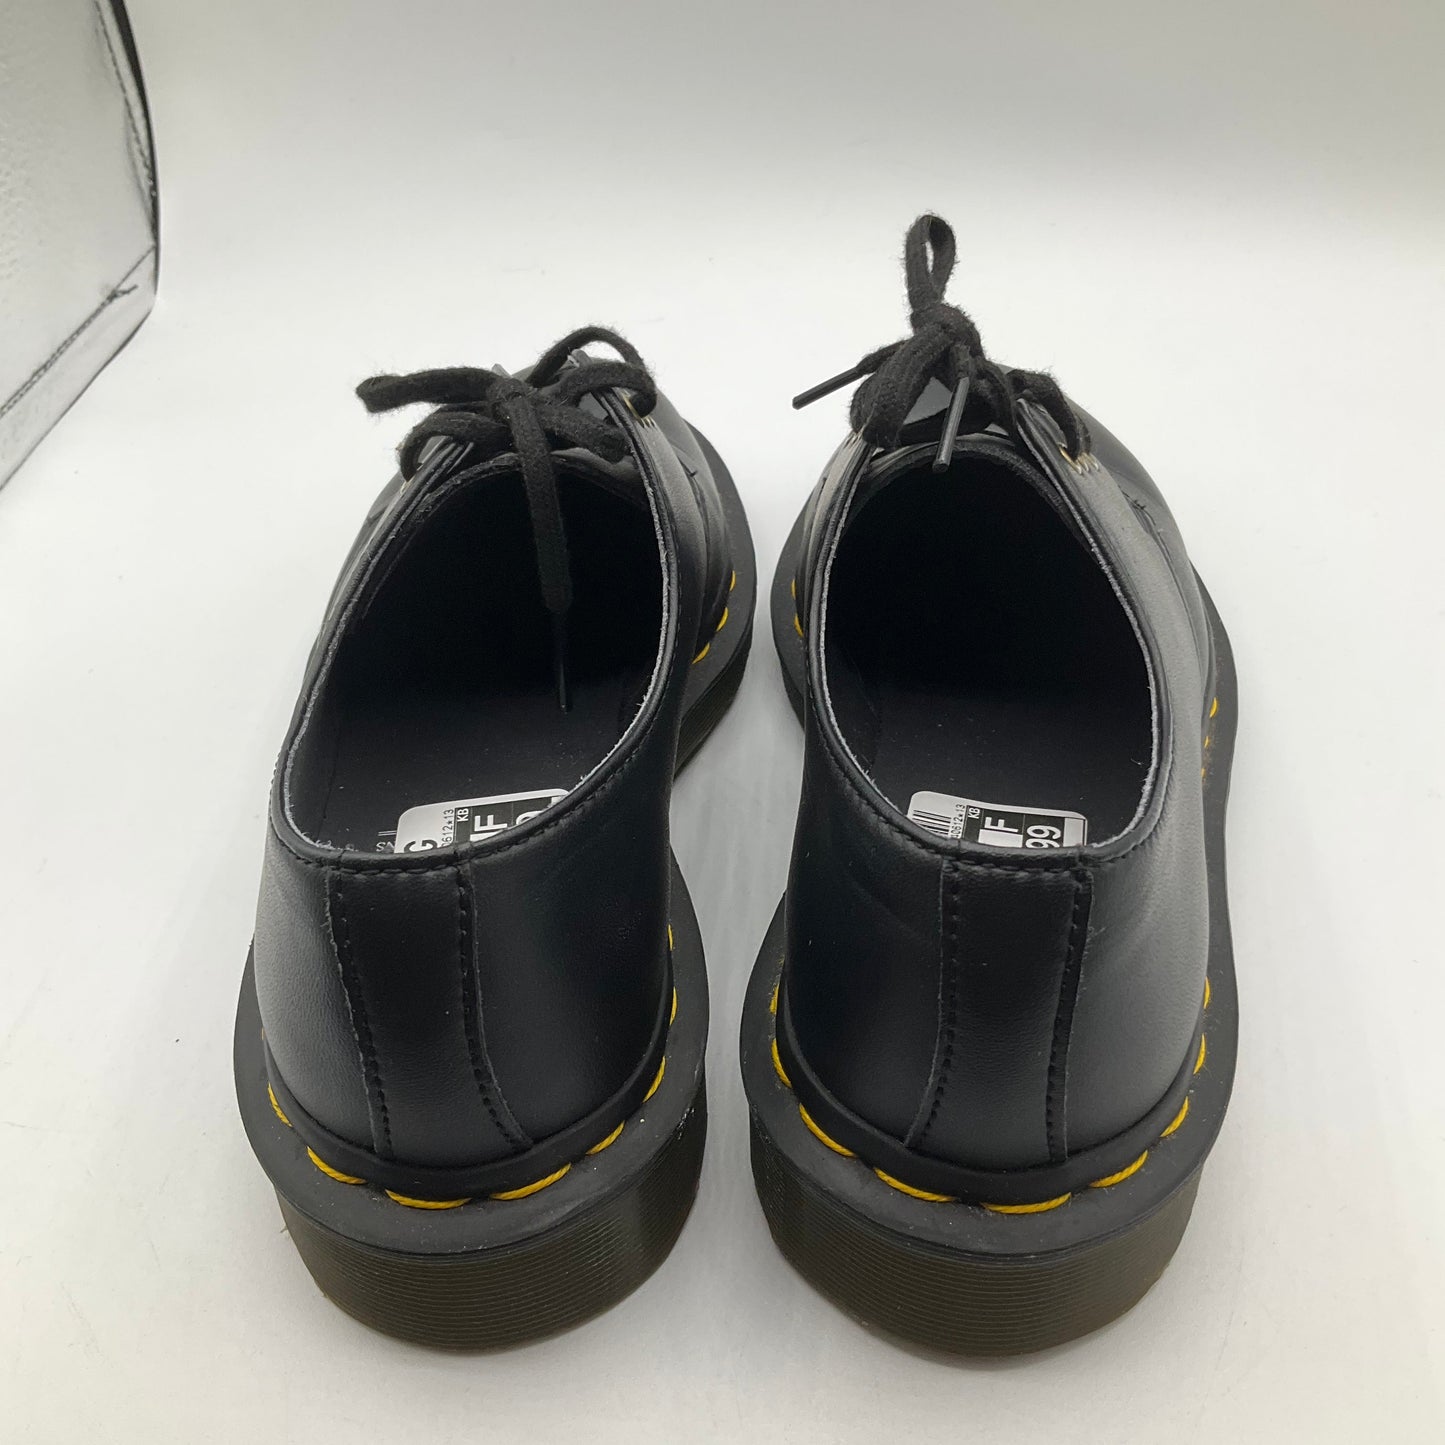 Black Shoes Flats Dr Martens, Size 5